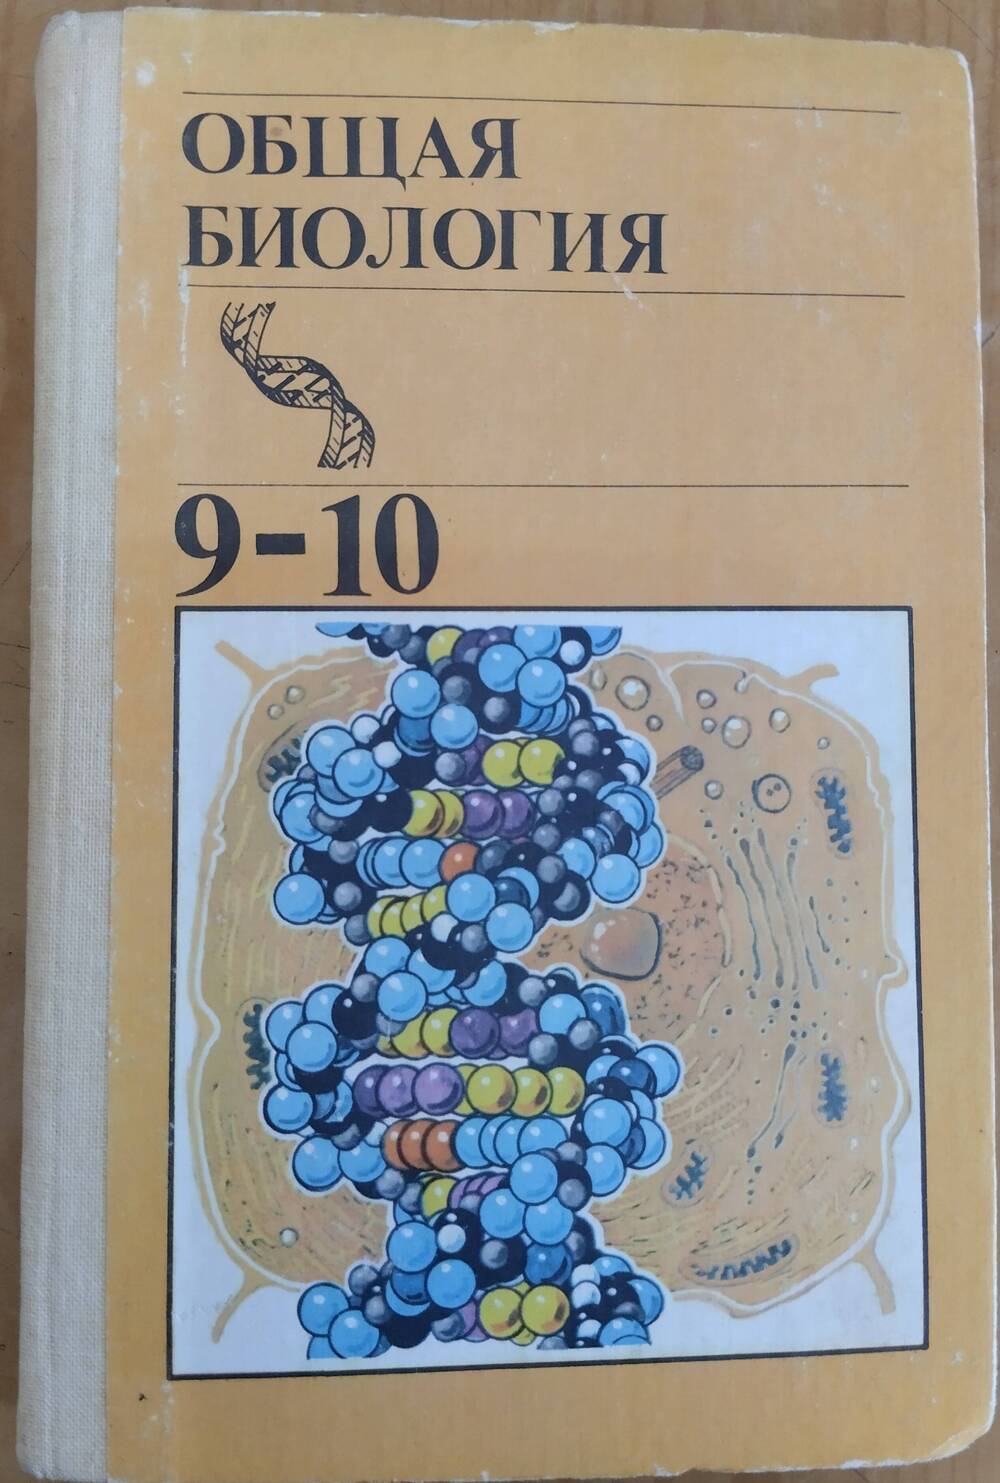 Книга Общая биология для 9-10 классов, 288 стр., ил.